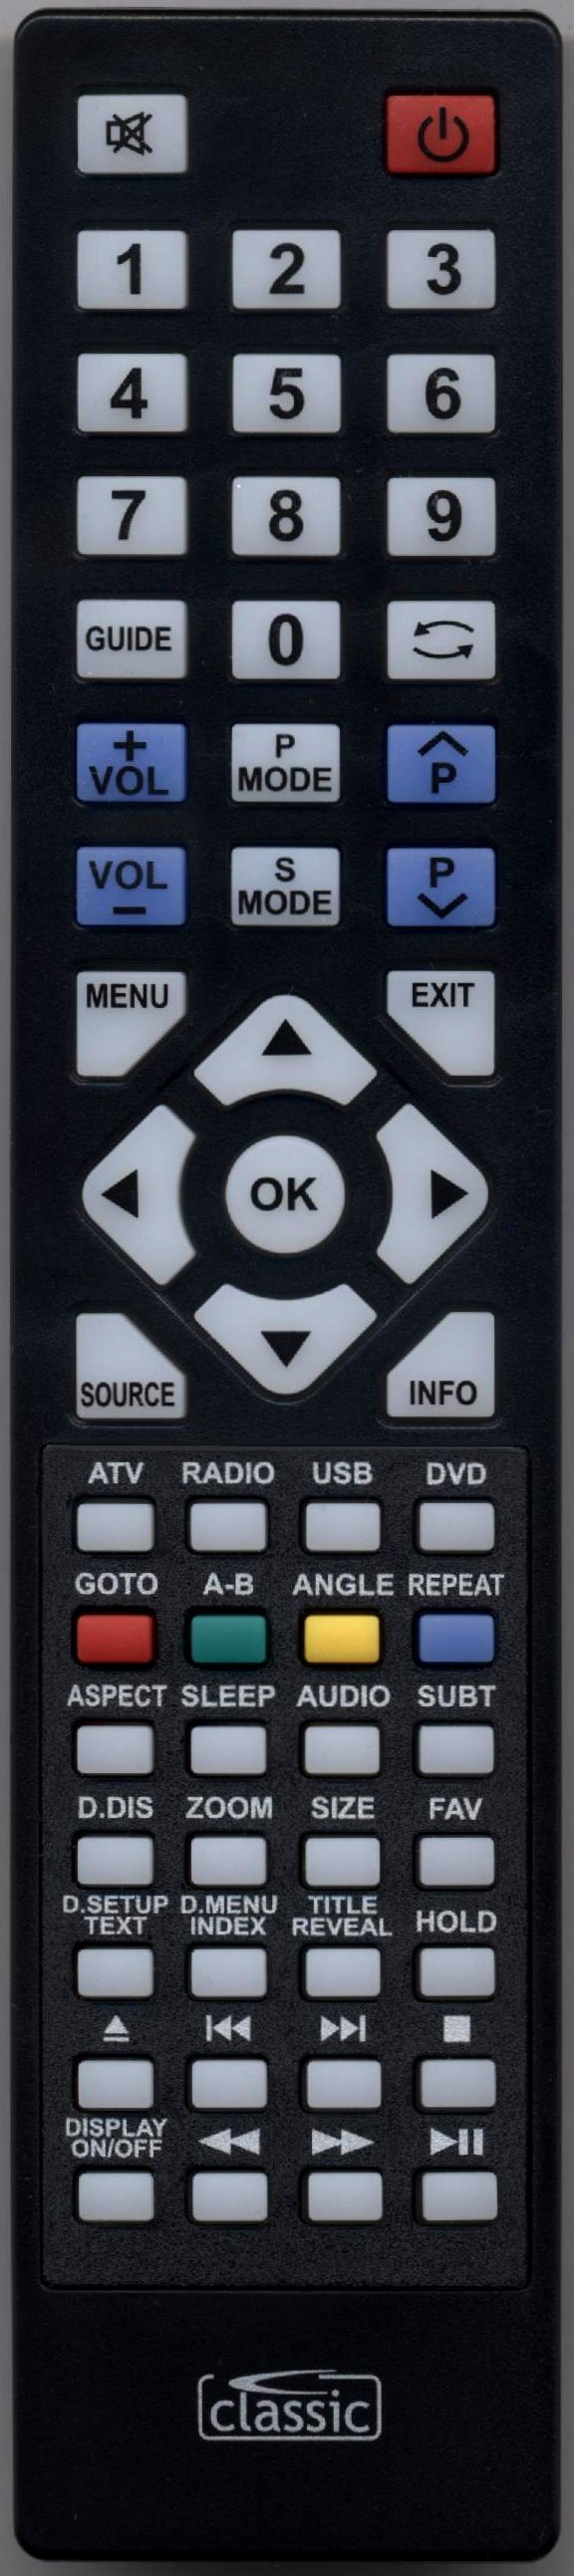 TECHNIKA LCD32-56 Remote Control Alternative